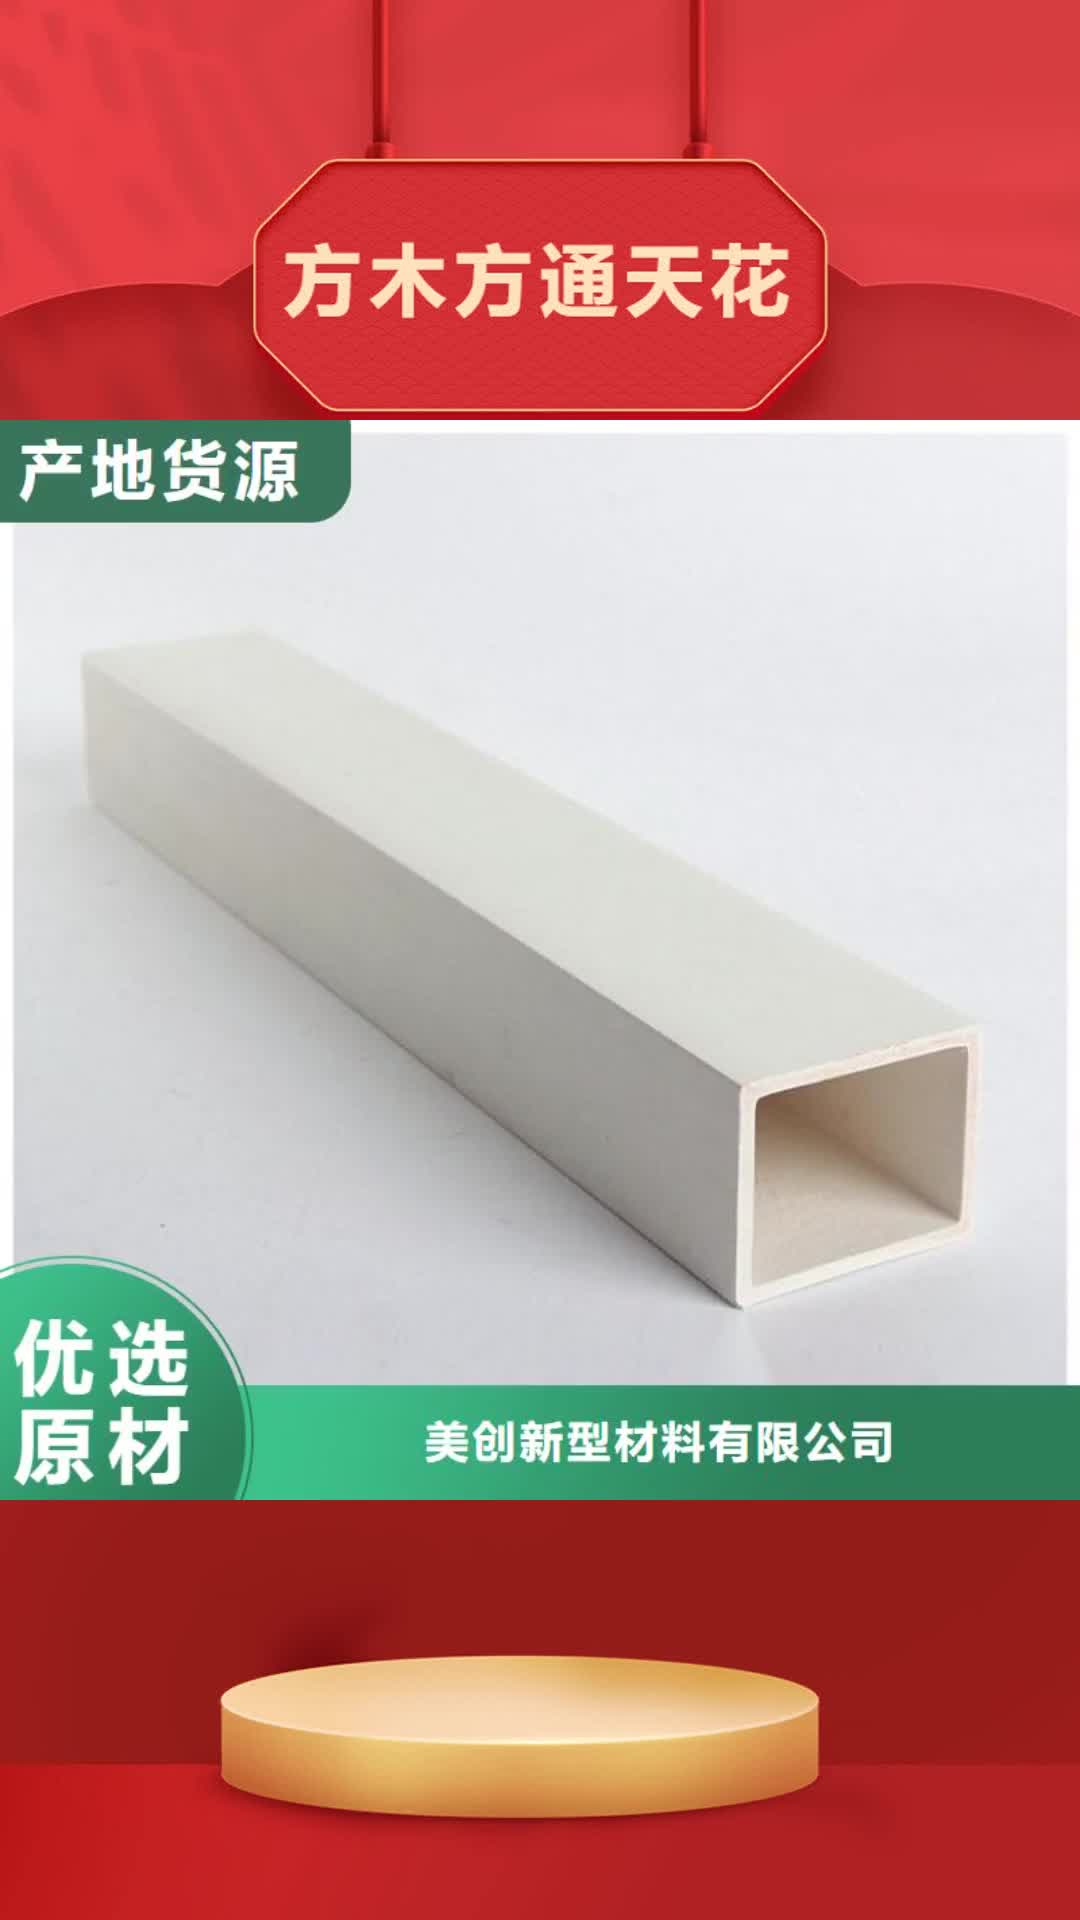 吉林【方木方通天花】,竹木纤维集成墙板厂家直销售后完善